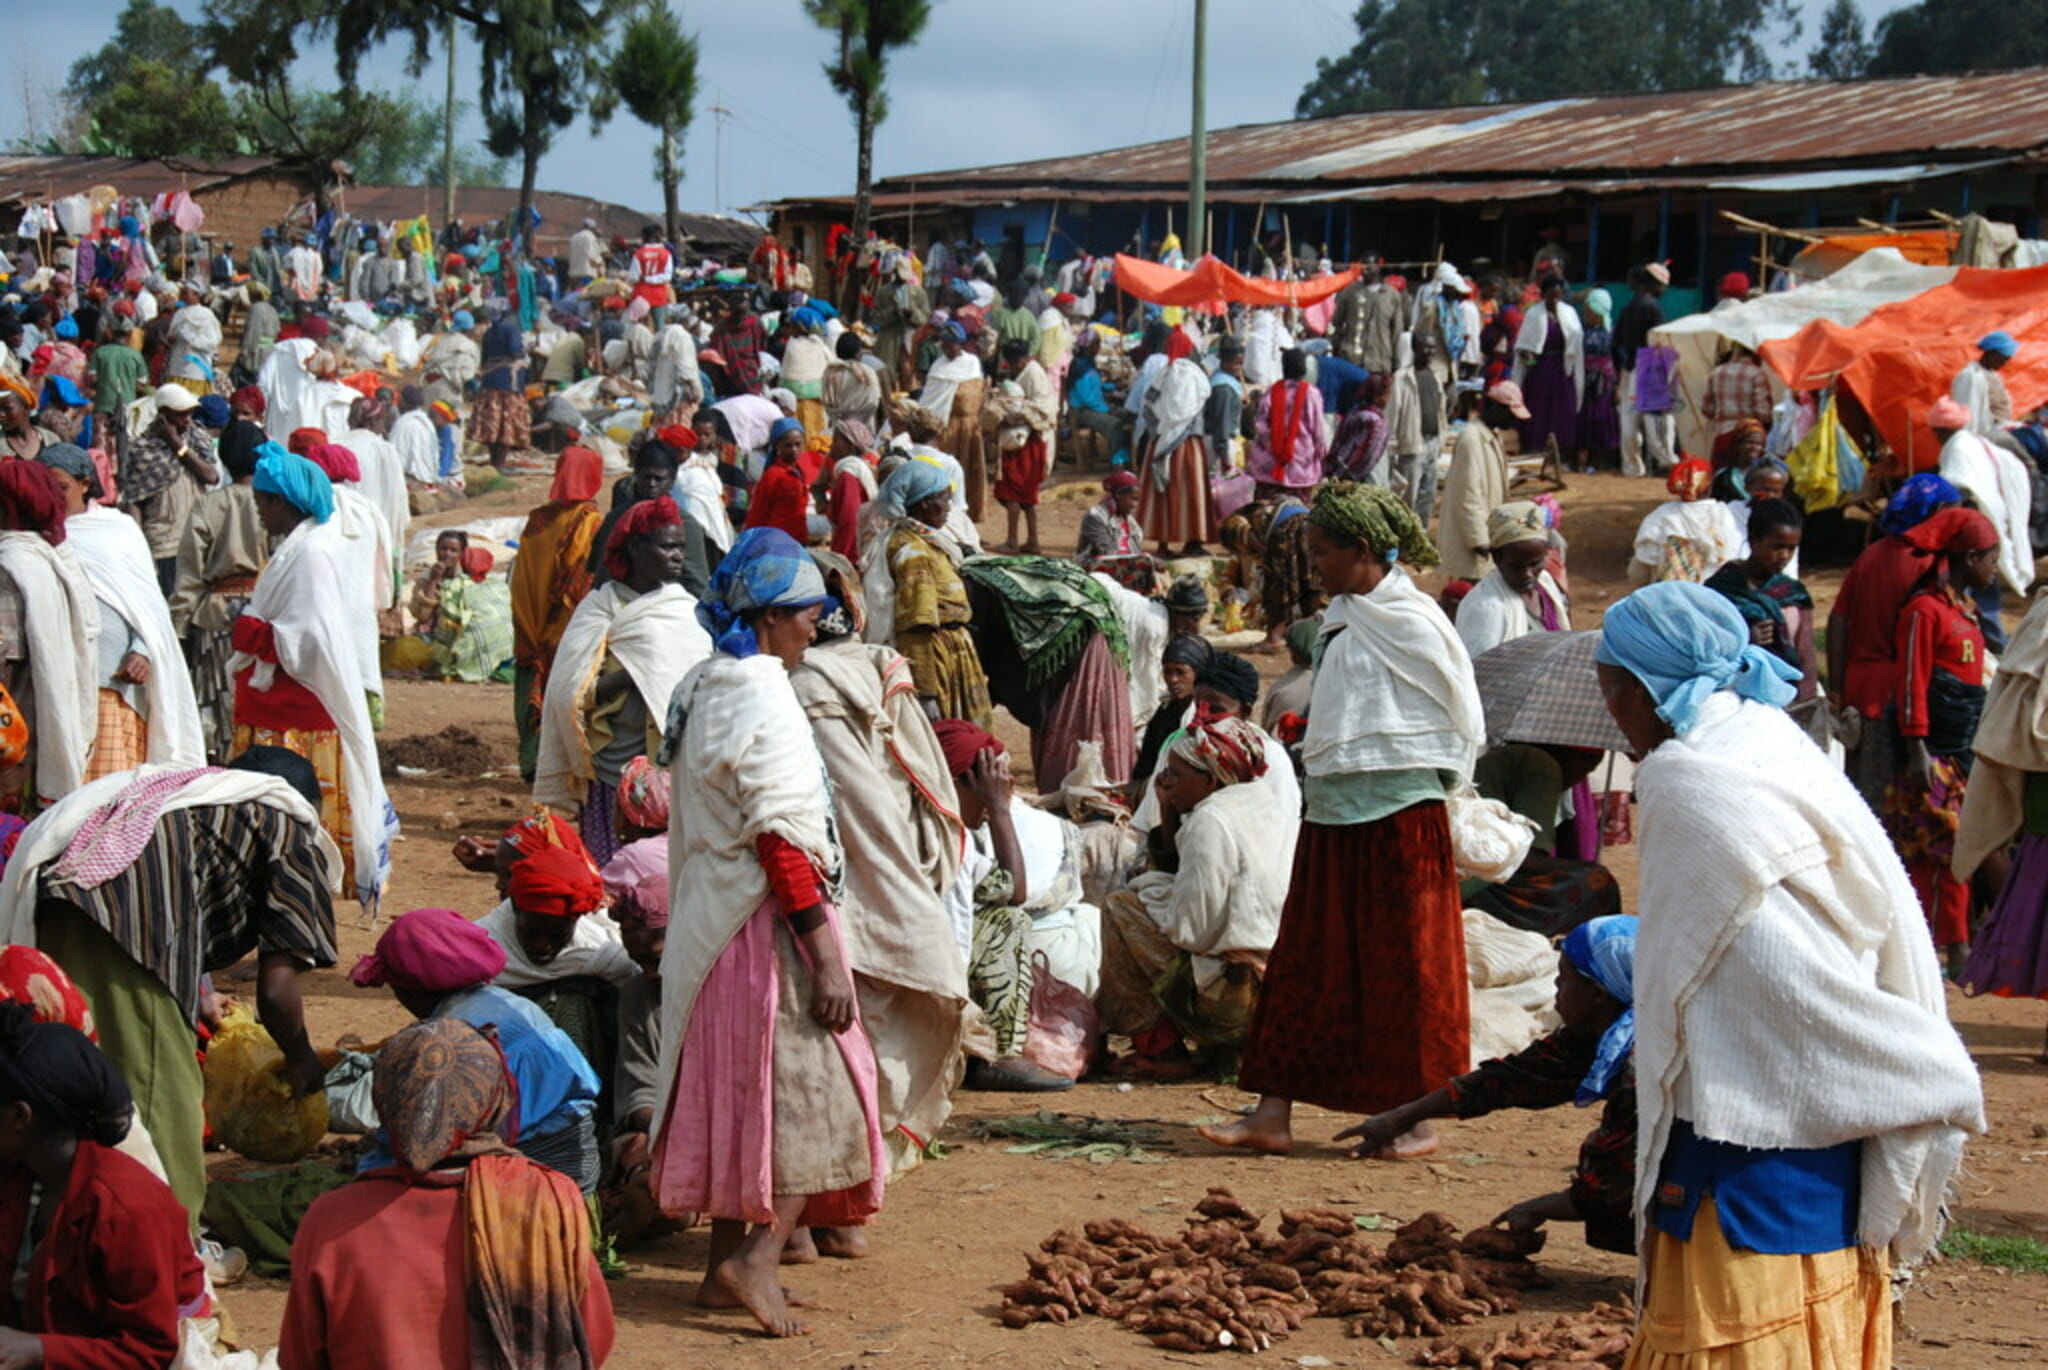 Ethiopia Markets in Ethiopia